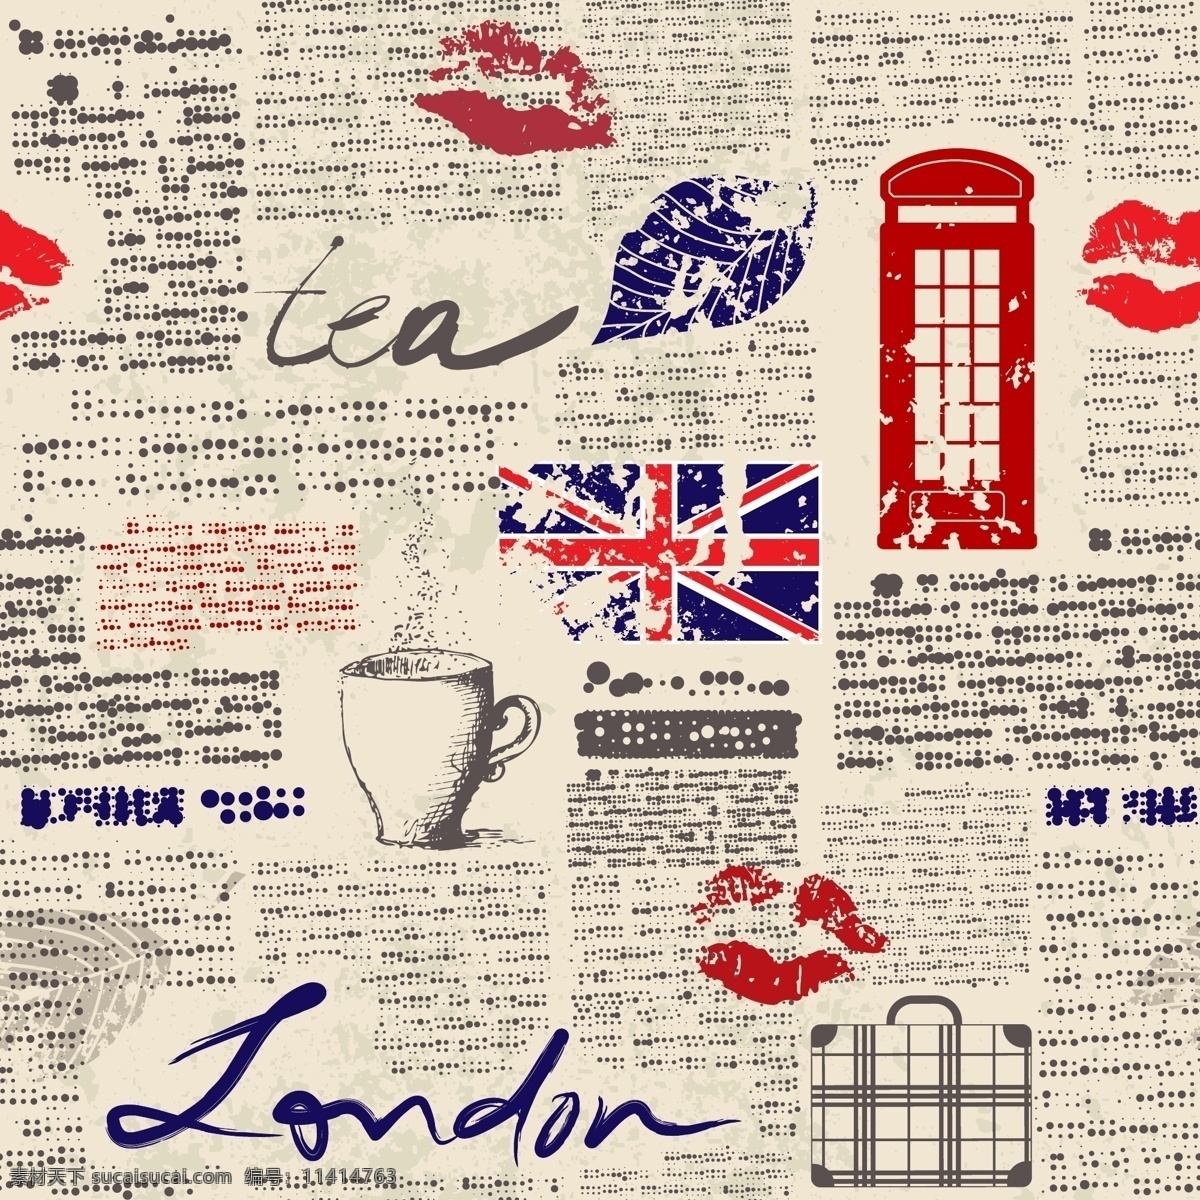 报纸 风格 英国 元素 海报 报纸风格 英国元素海报 茶 电话亭 英国国旗 旅行箱 伦敦 无缝背景 london 矢量图